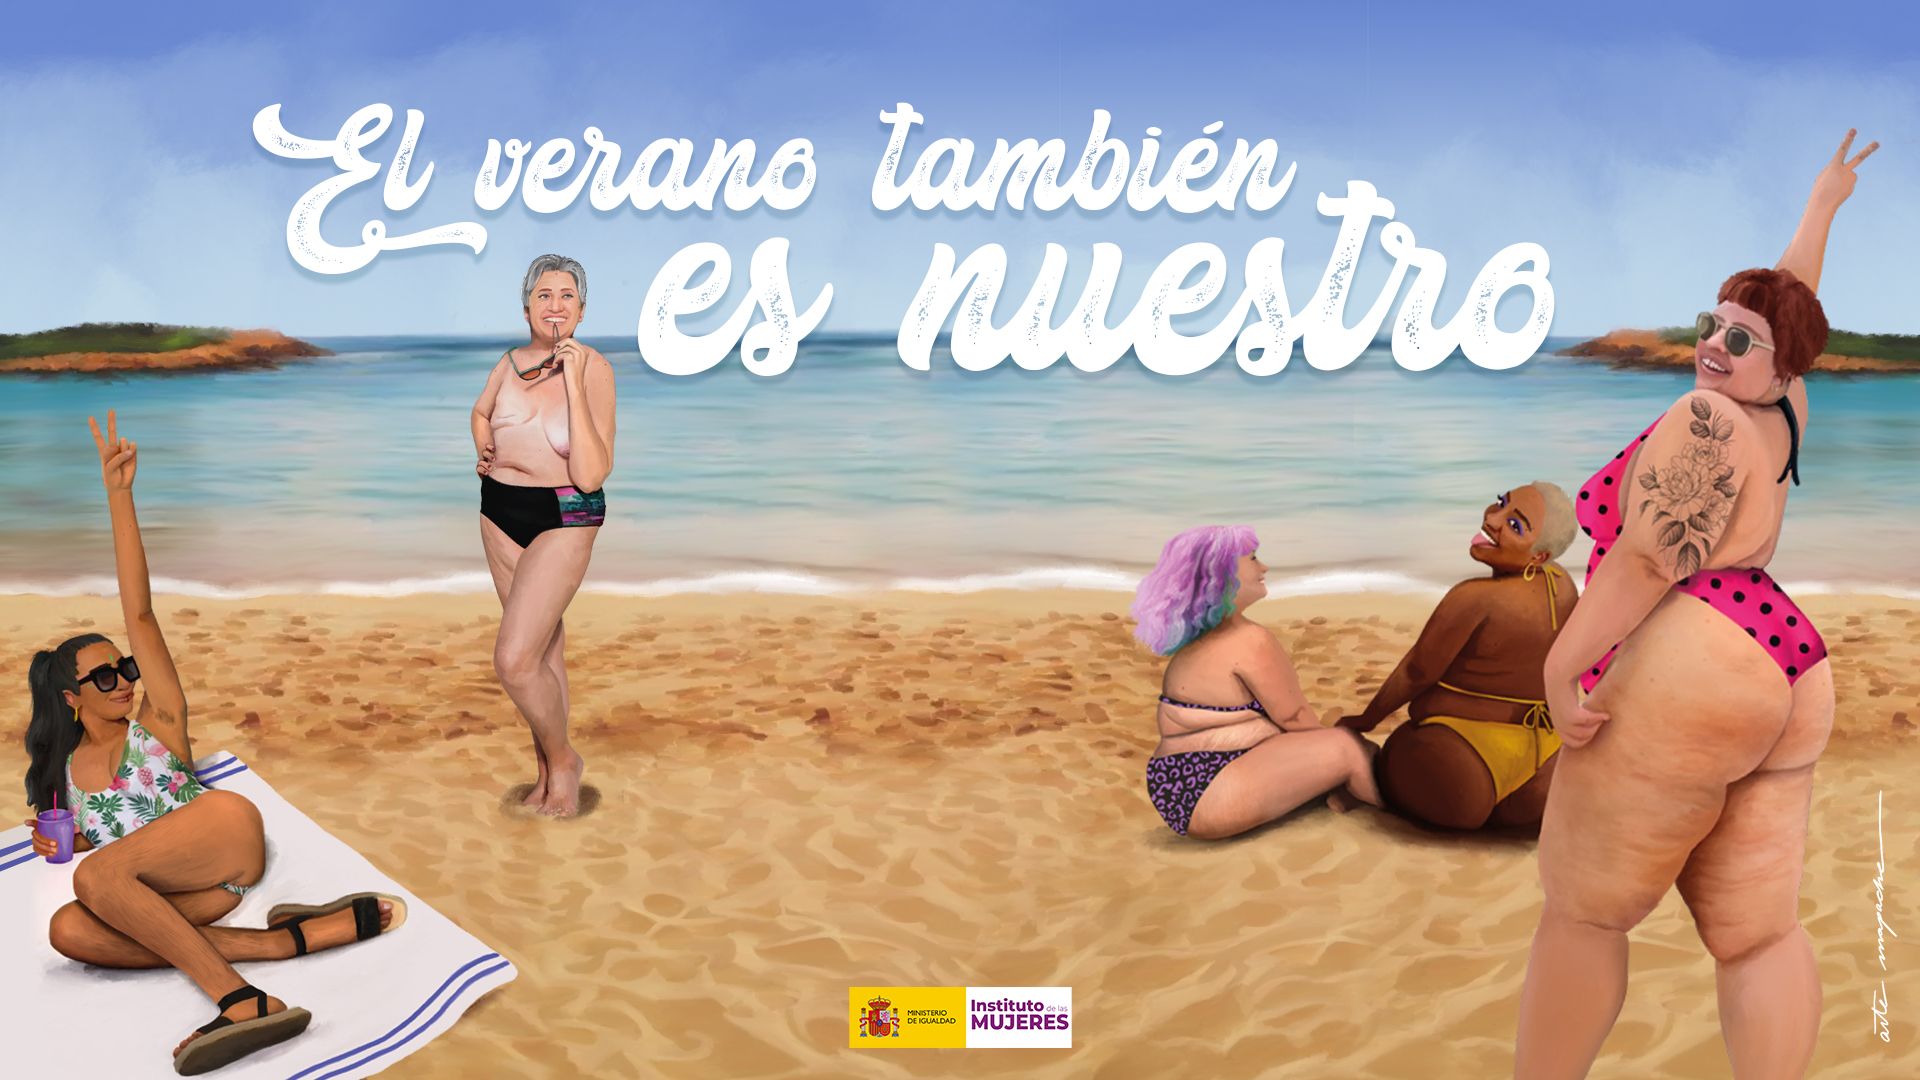 Ilustración de la criticada campaña del Ministerio de Igualdad. El ataque de los gordófobos de playa. De mentiras e Igualdad